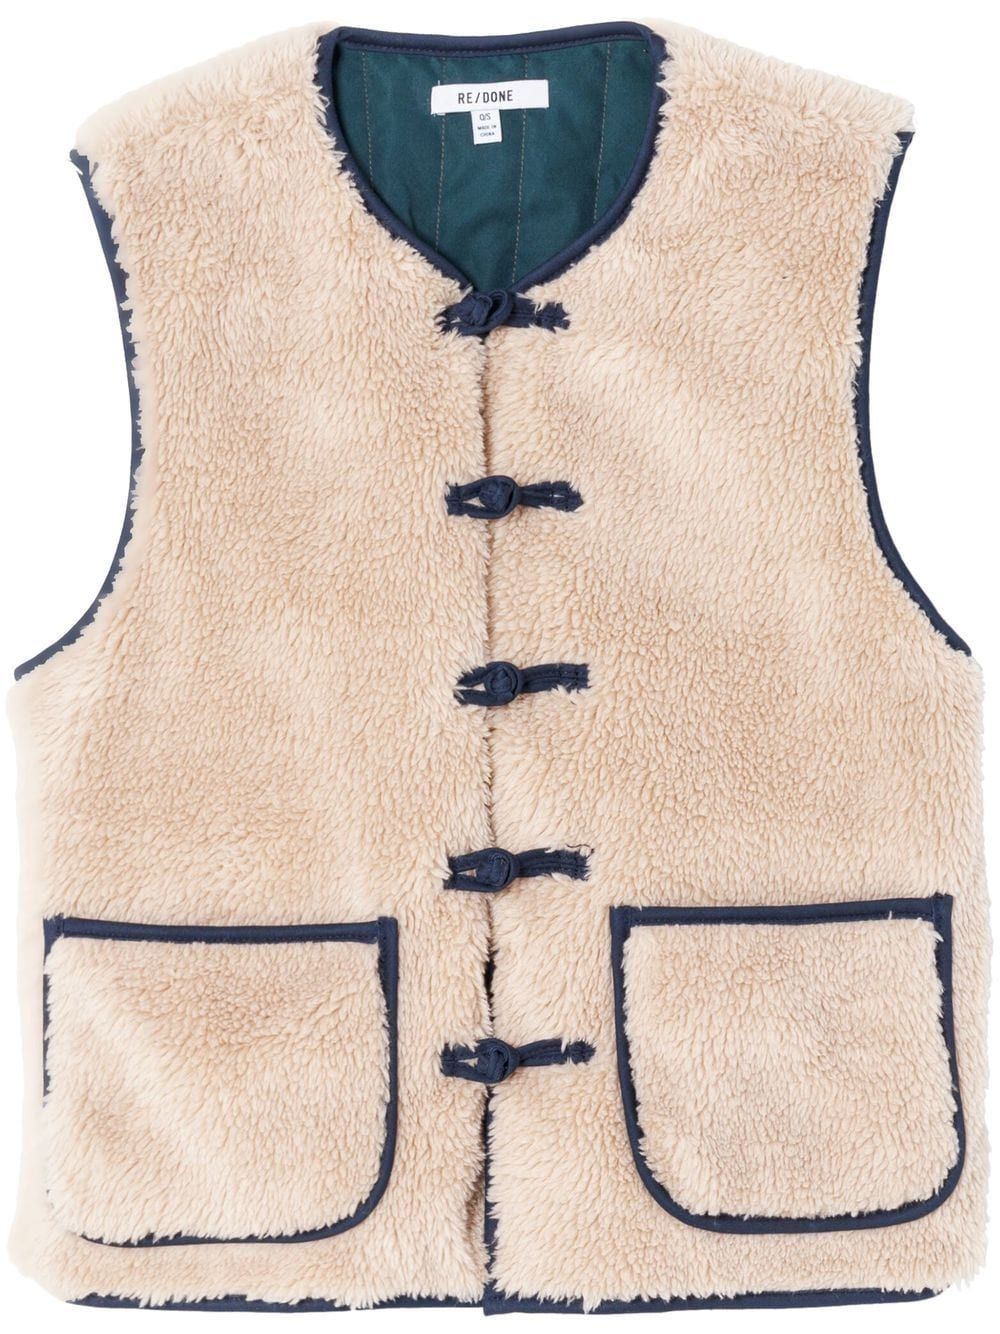 RE/DONE knot-front Fleece Jacket - Farfetch | Farfetch Global